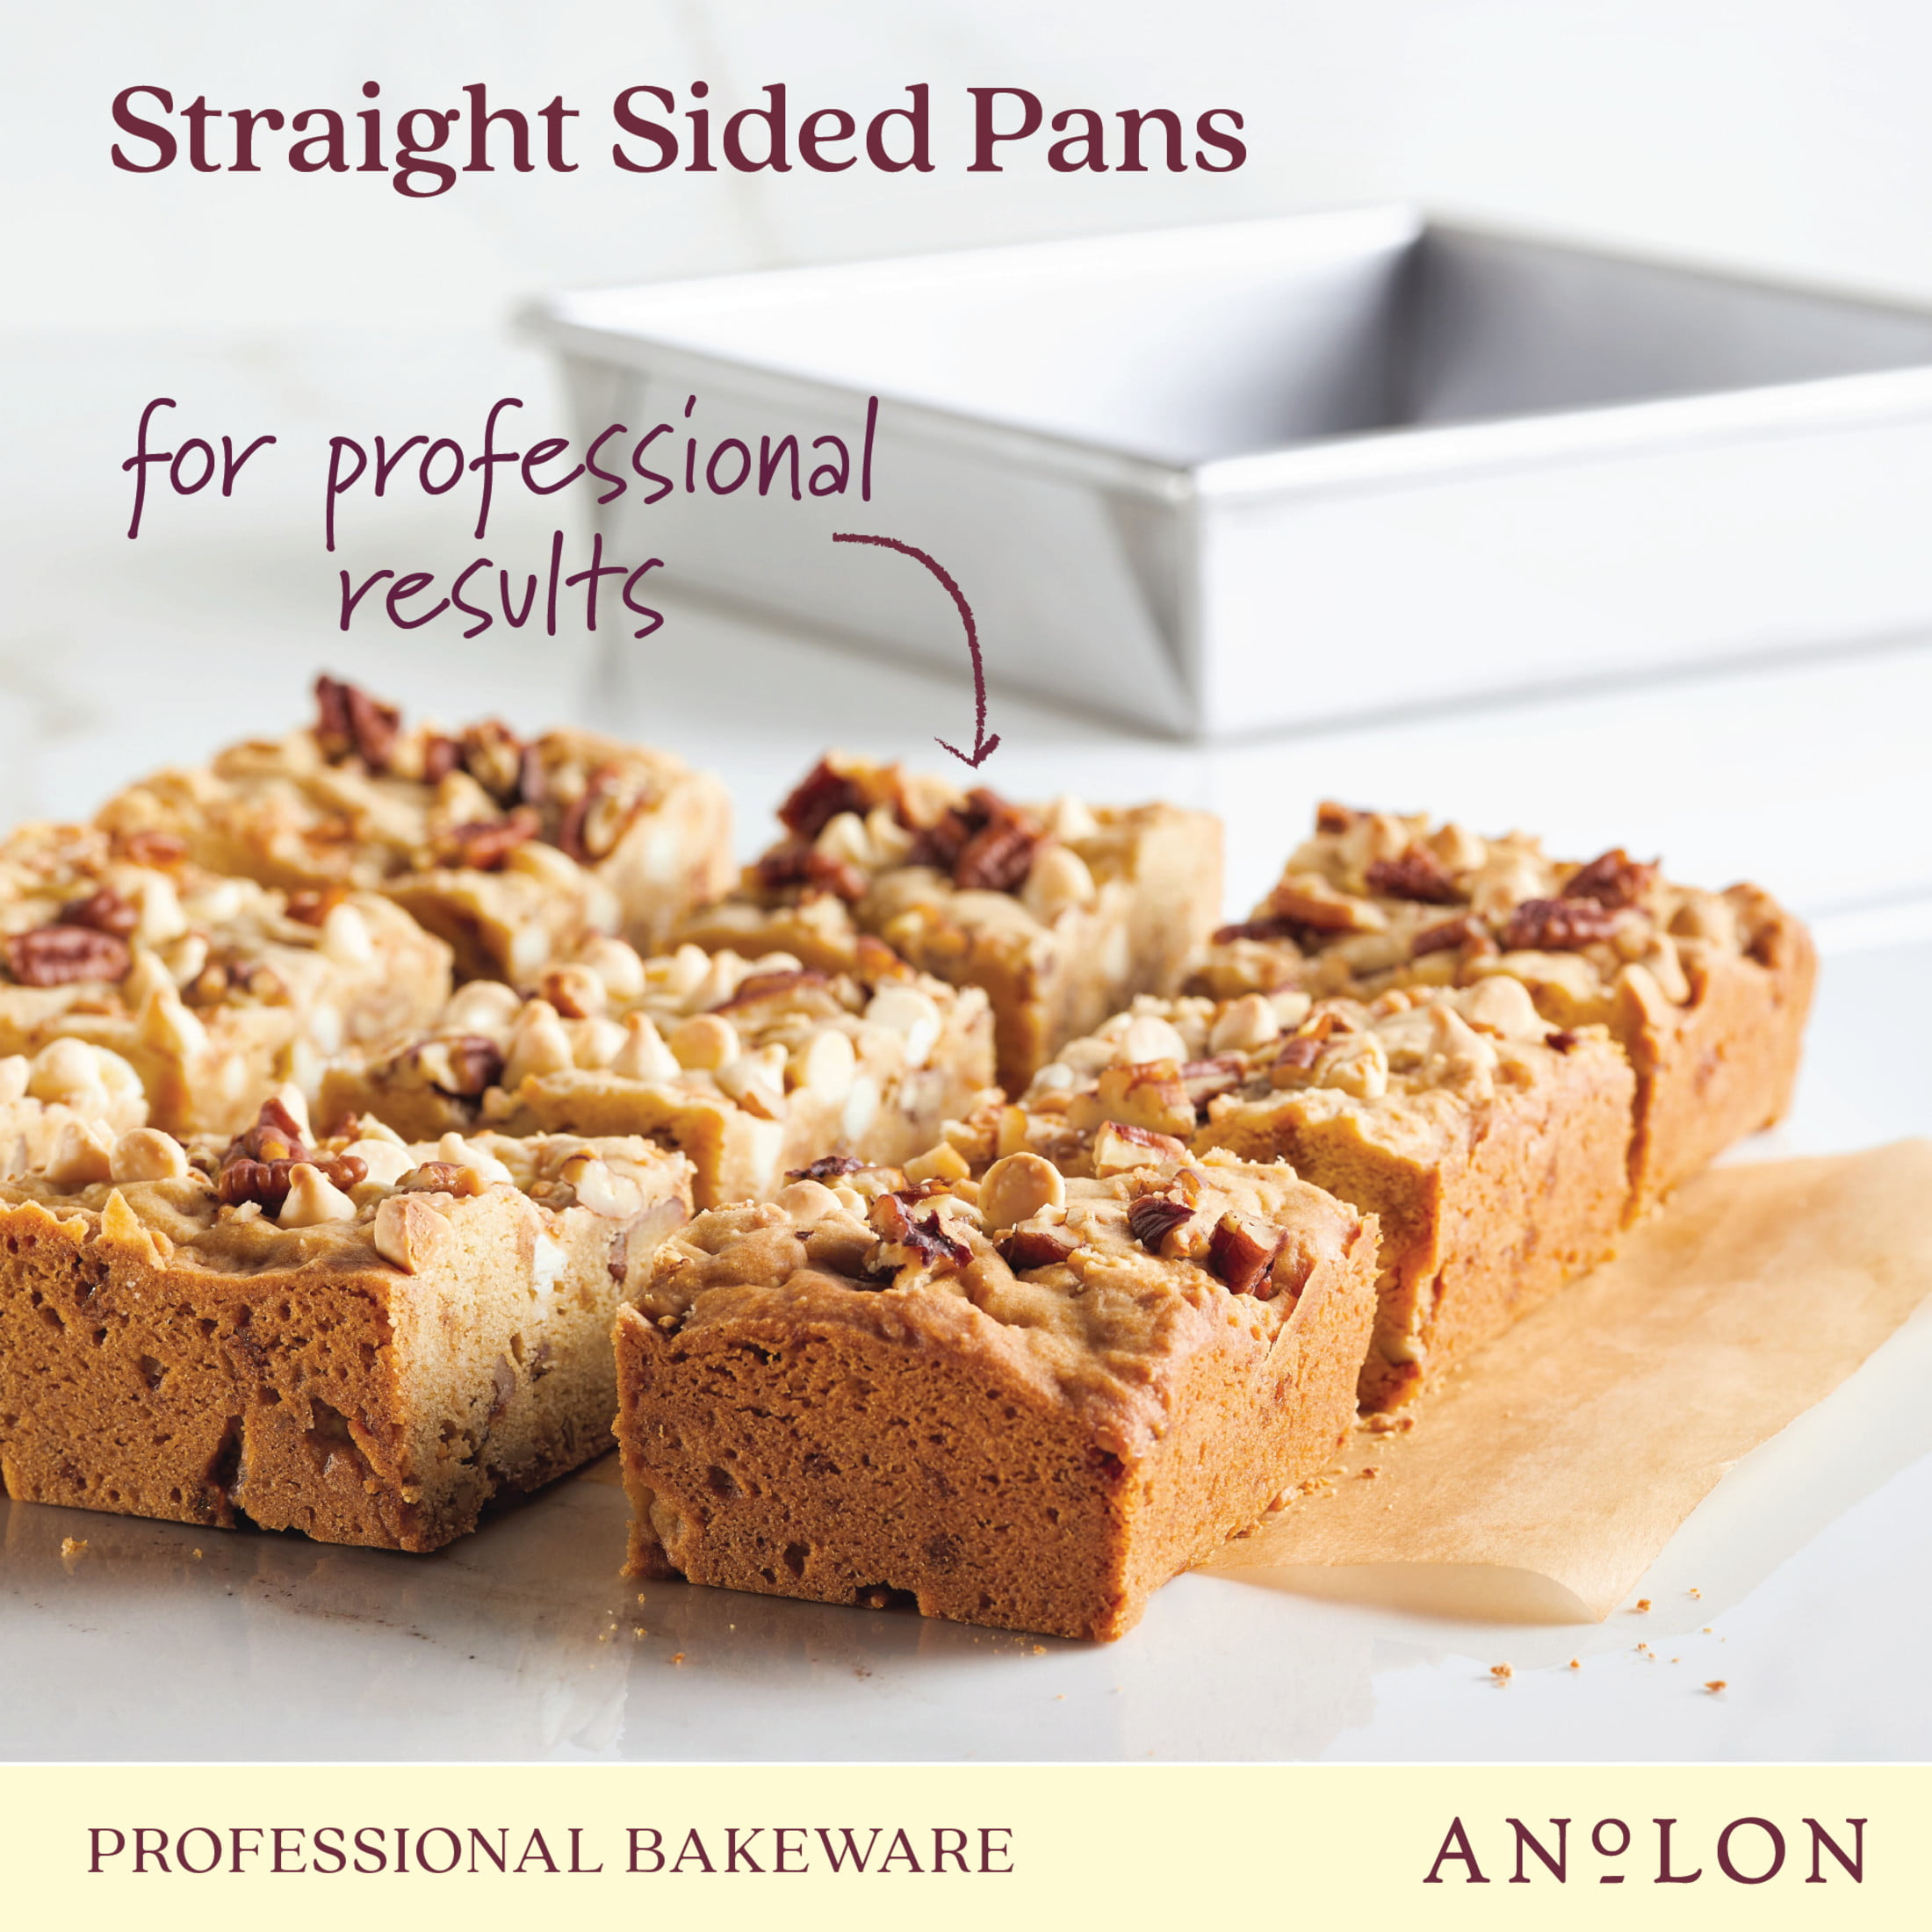 Anolon Pro Bake Bakeware Aluminized Steel Half Sheet Baking Pan Set, 2-Piece, Silver